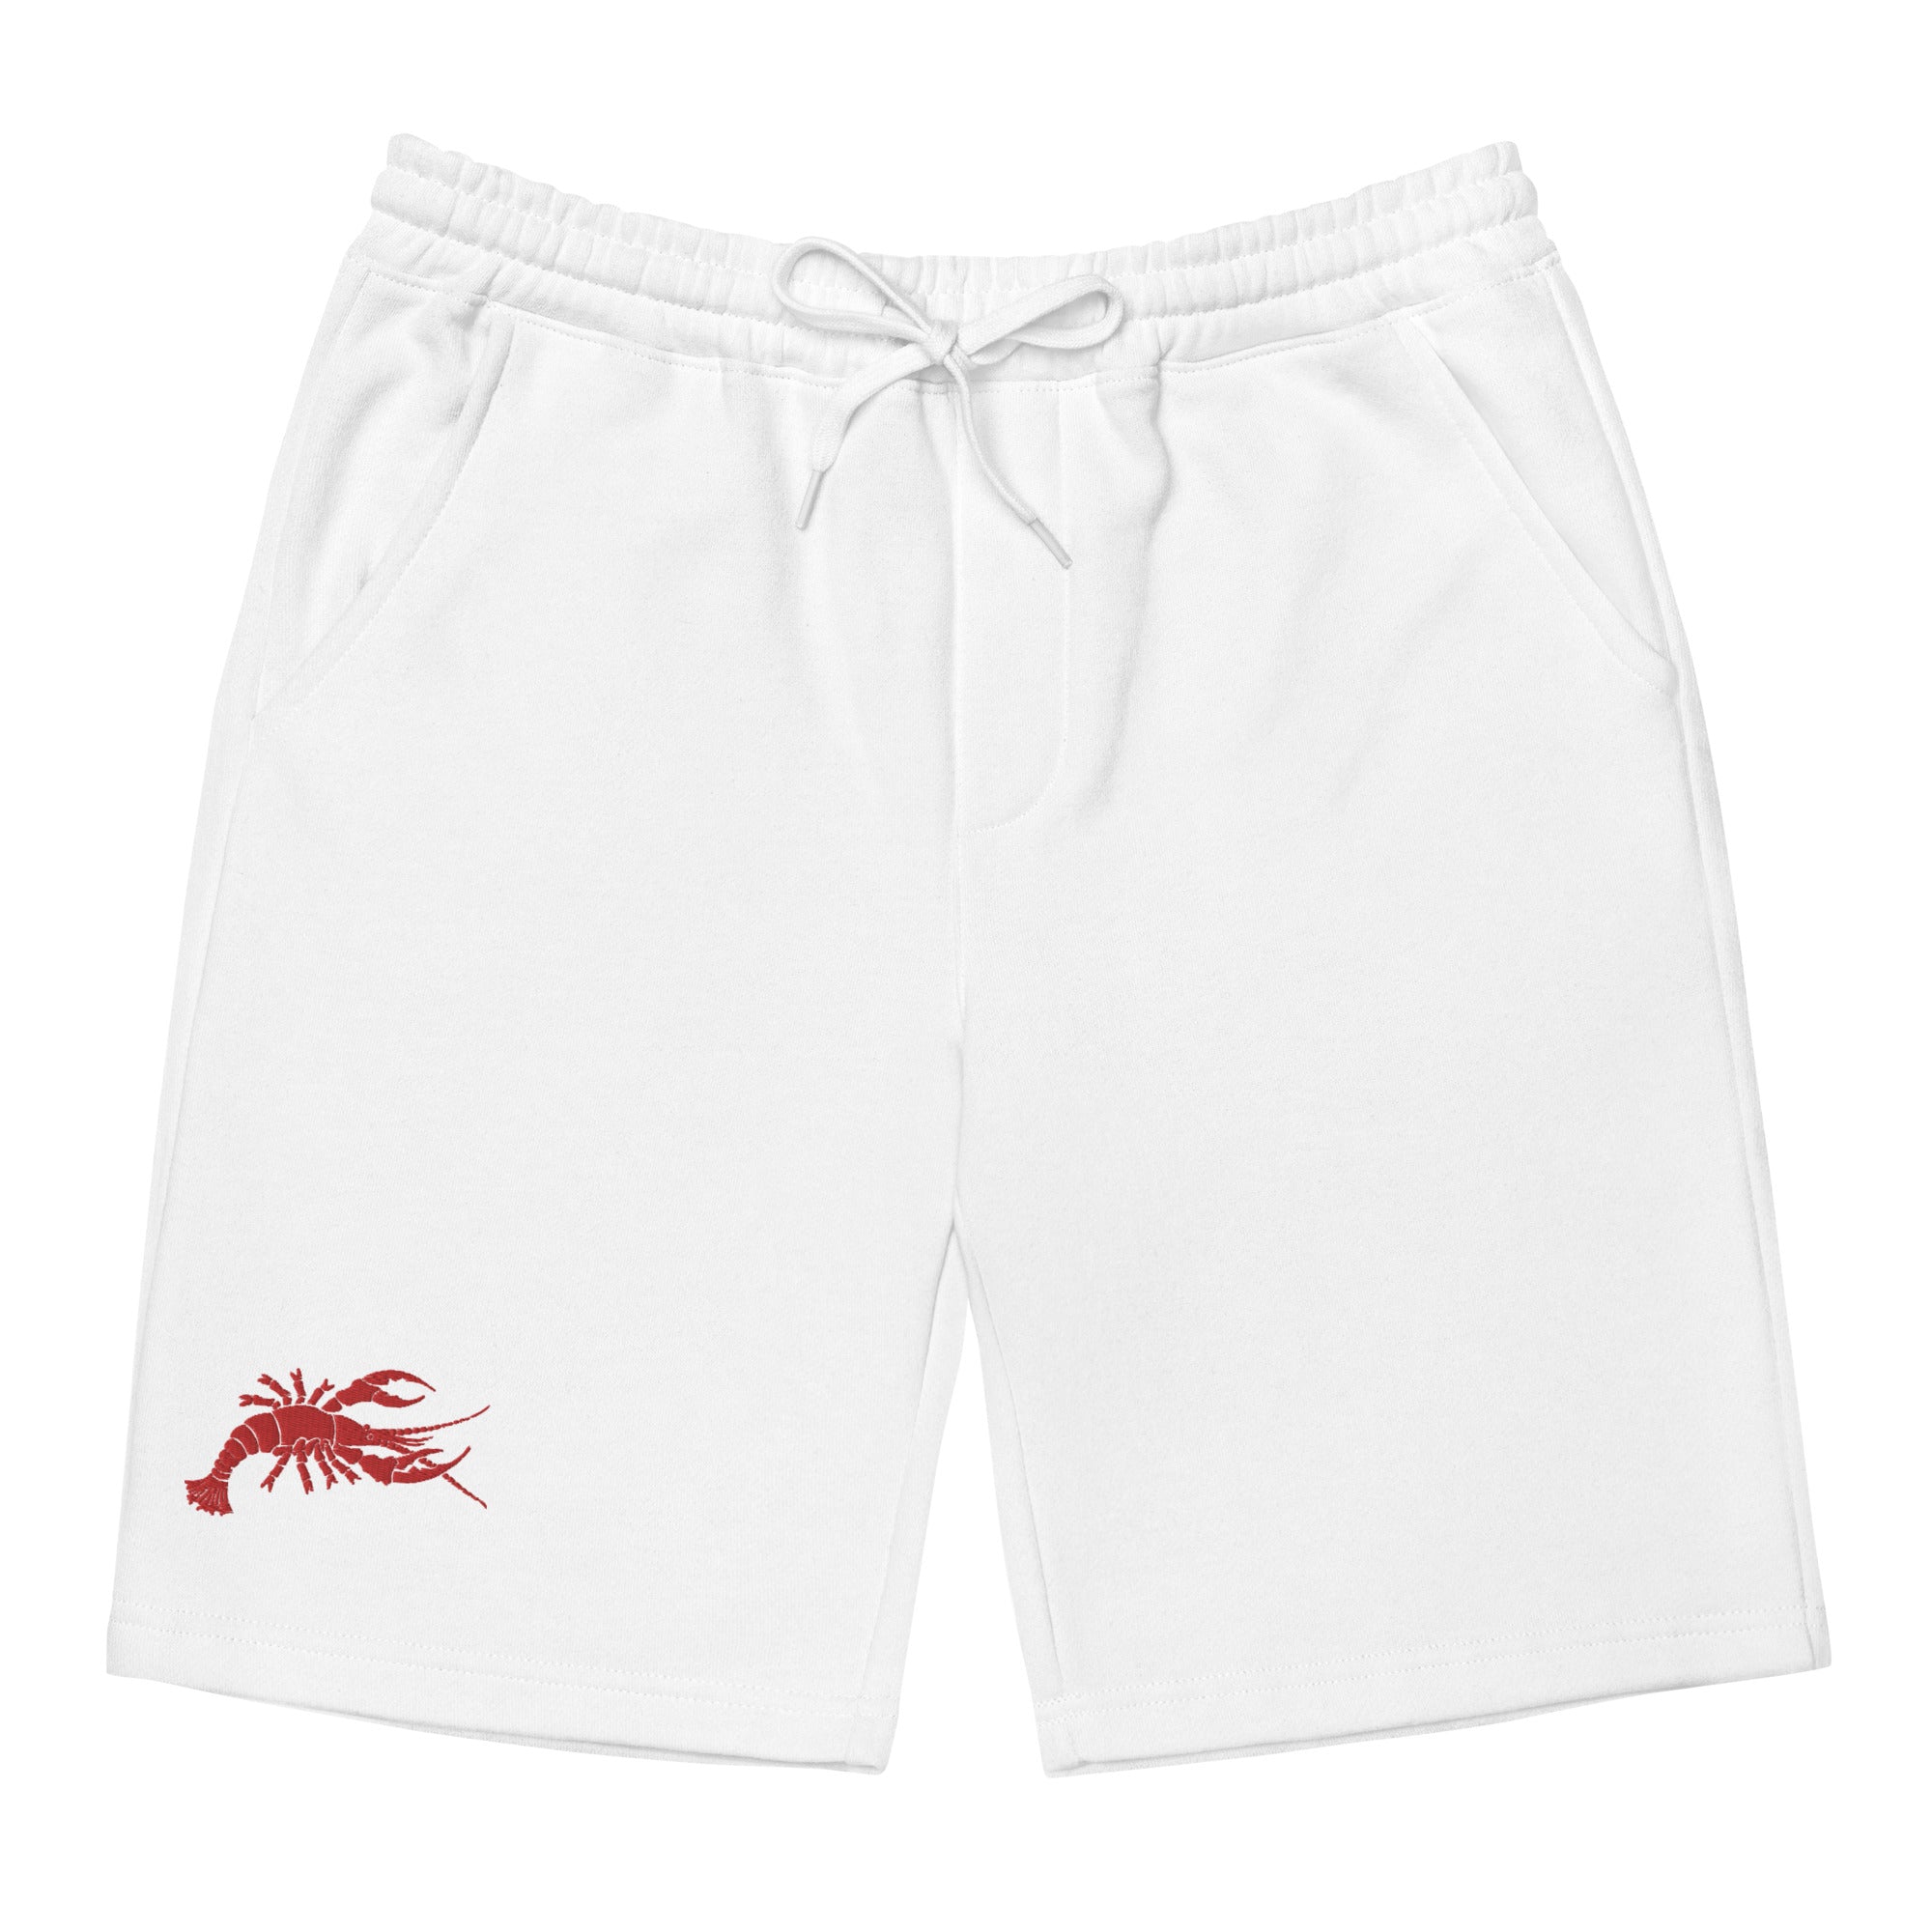 Lobster Hierarchy Men's Fleece Shorts